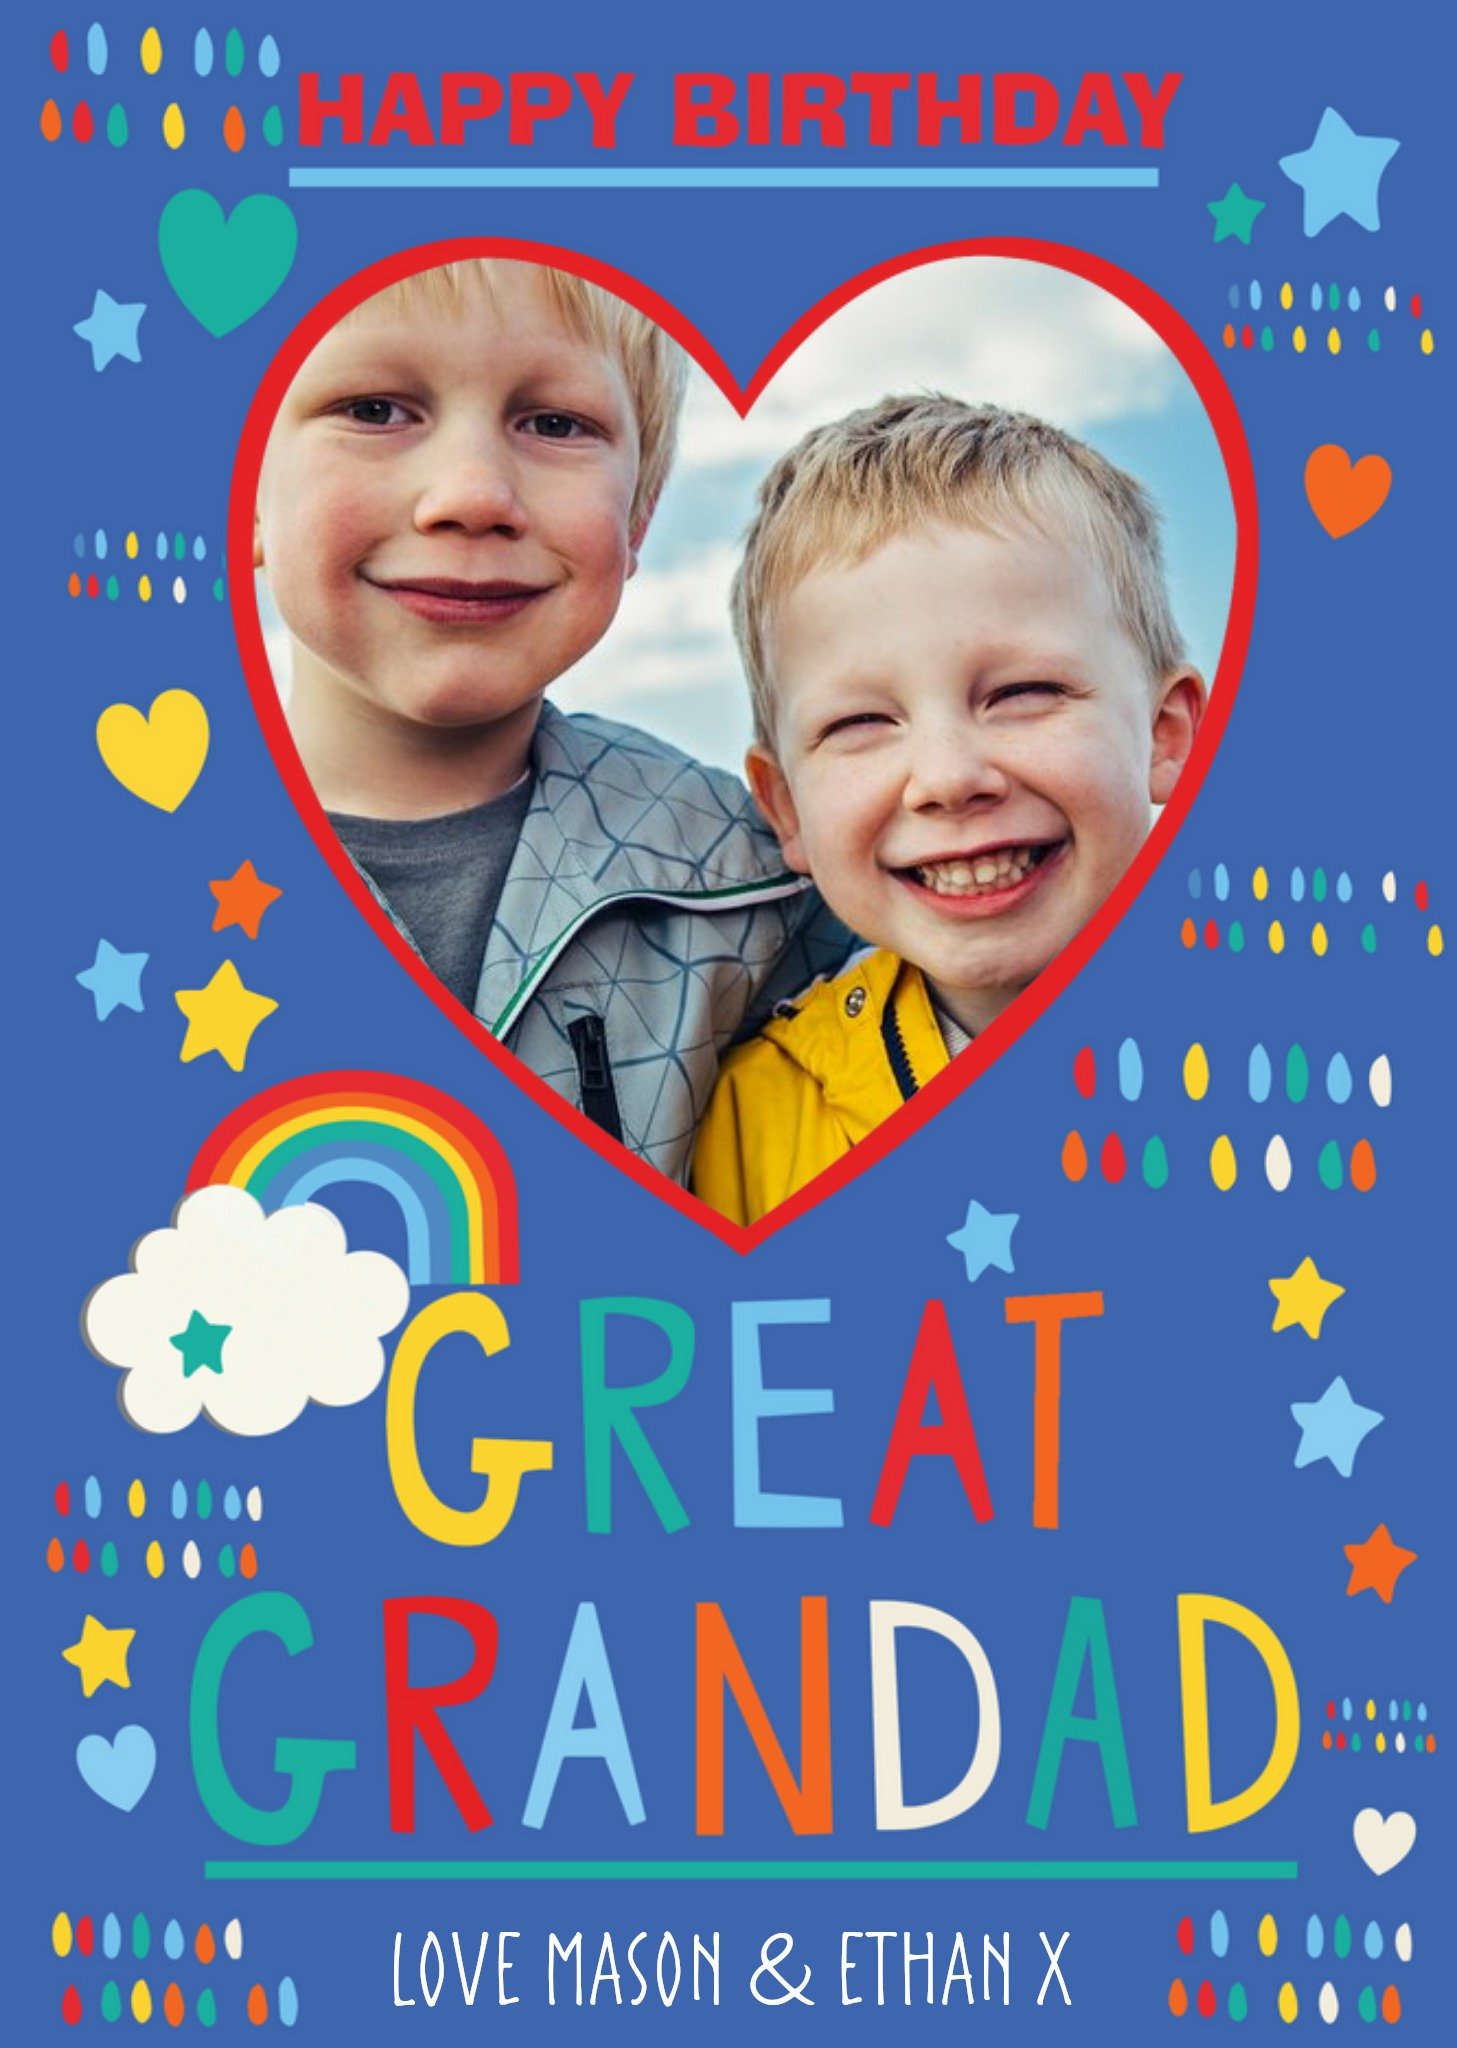 Moonpig Great Grandad Rainbow Photo Upload Birthday Card Ecard